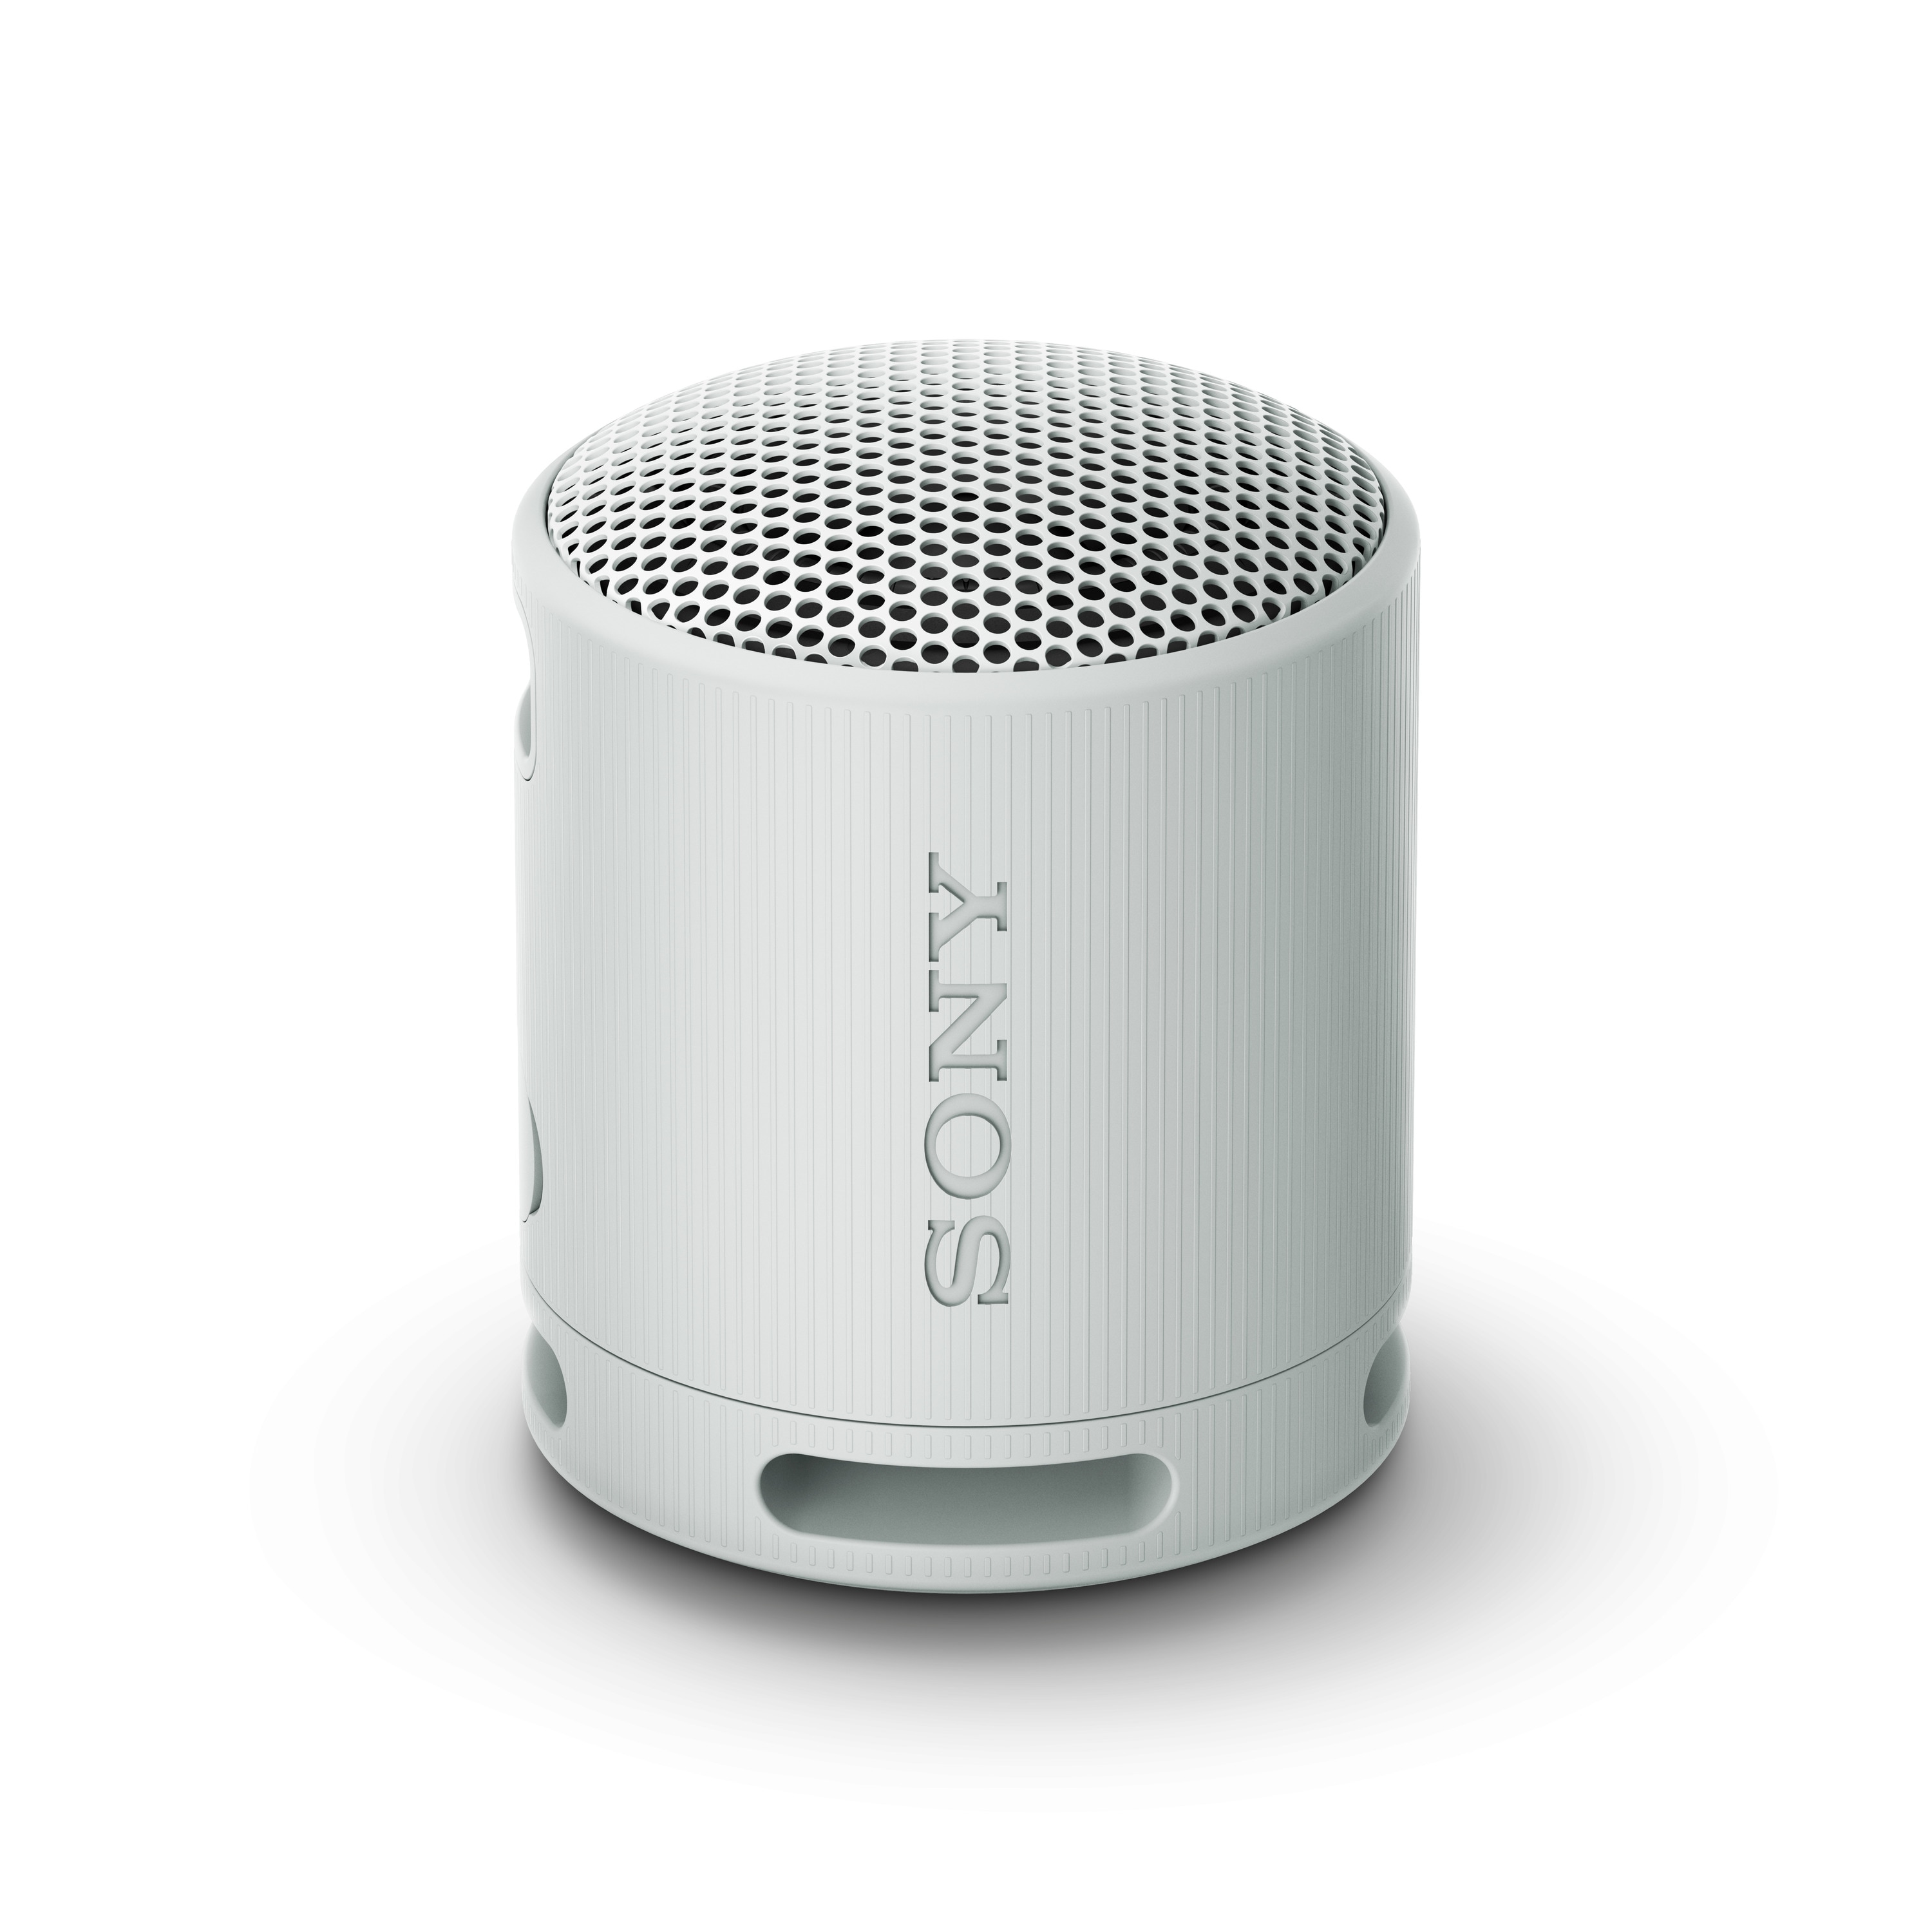 Sony-Bluetooth-Lautsprecher - online kaufen bei Cyberport